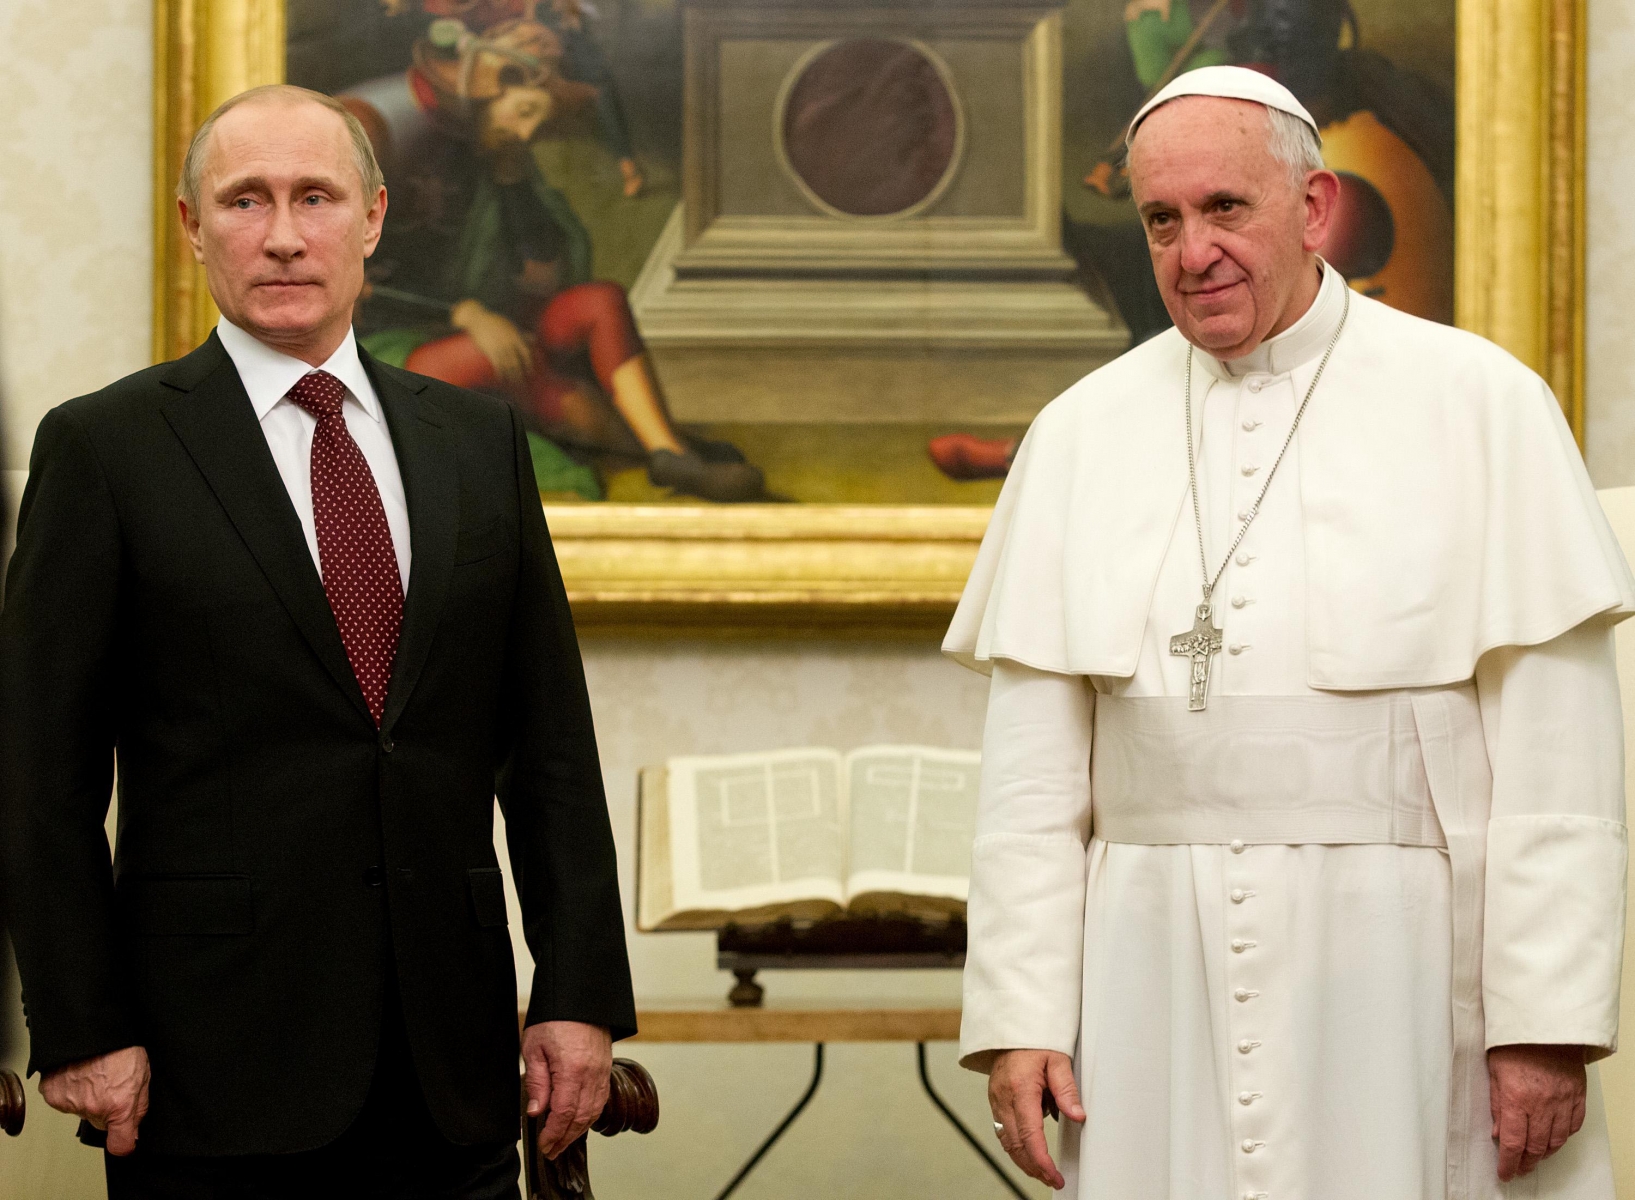 A Vatikán leplezi az orosz narratívákat: I. Ferenc túllépett a “vallási semlegesség” határain